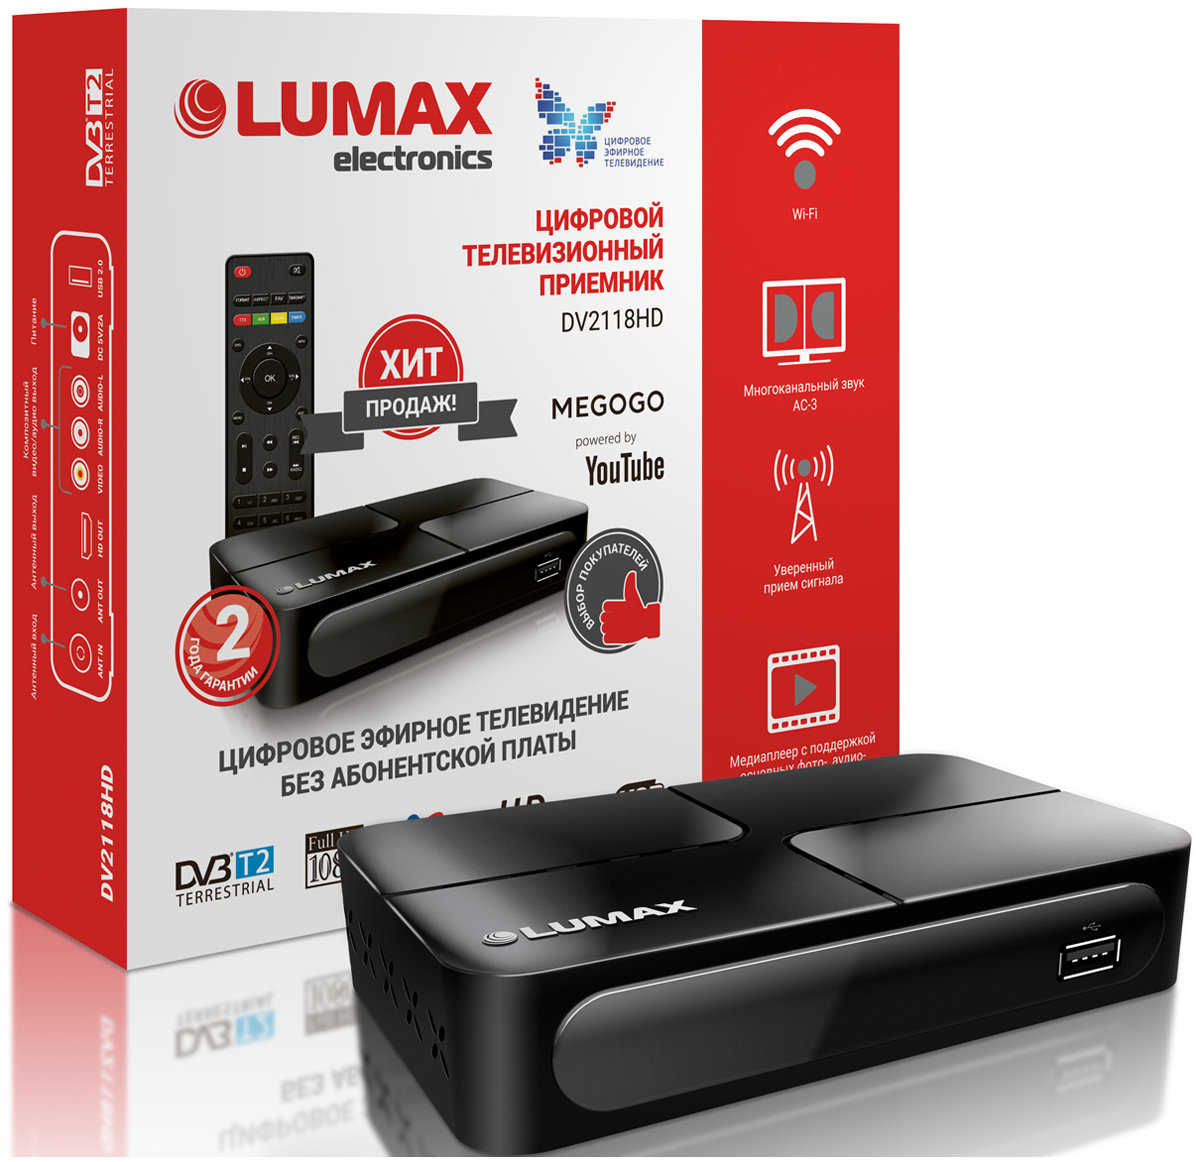 Цифровой телевизионный ресивер Lumax DV 2118 HD lumax dv 2120hd